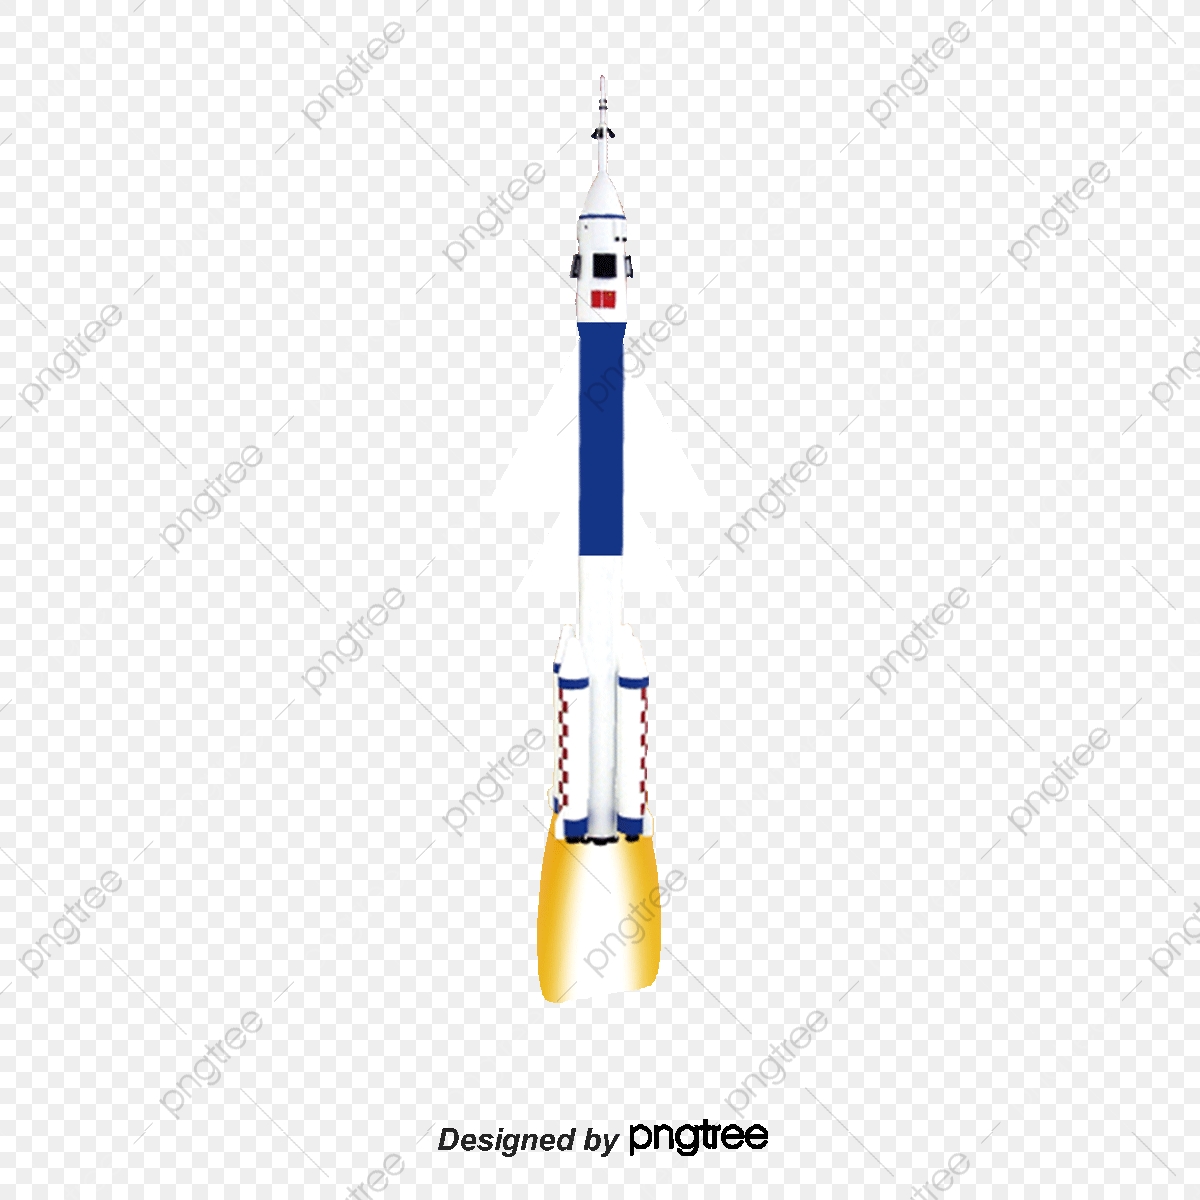 Rocketship clipart space probe. Vertical rocket ship spacecraft